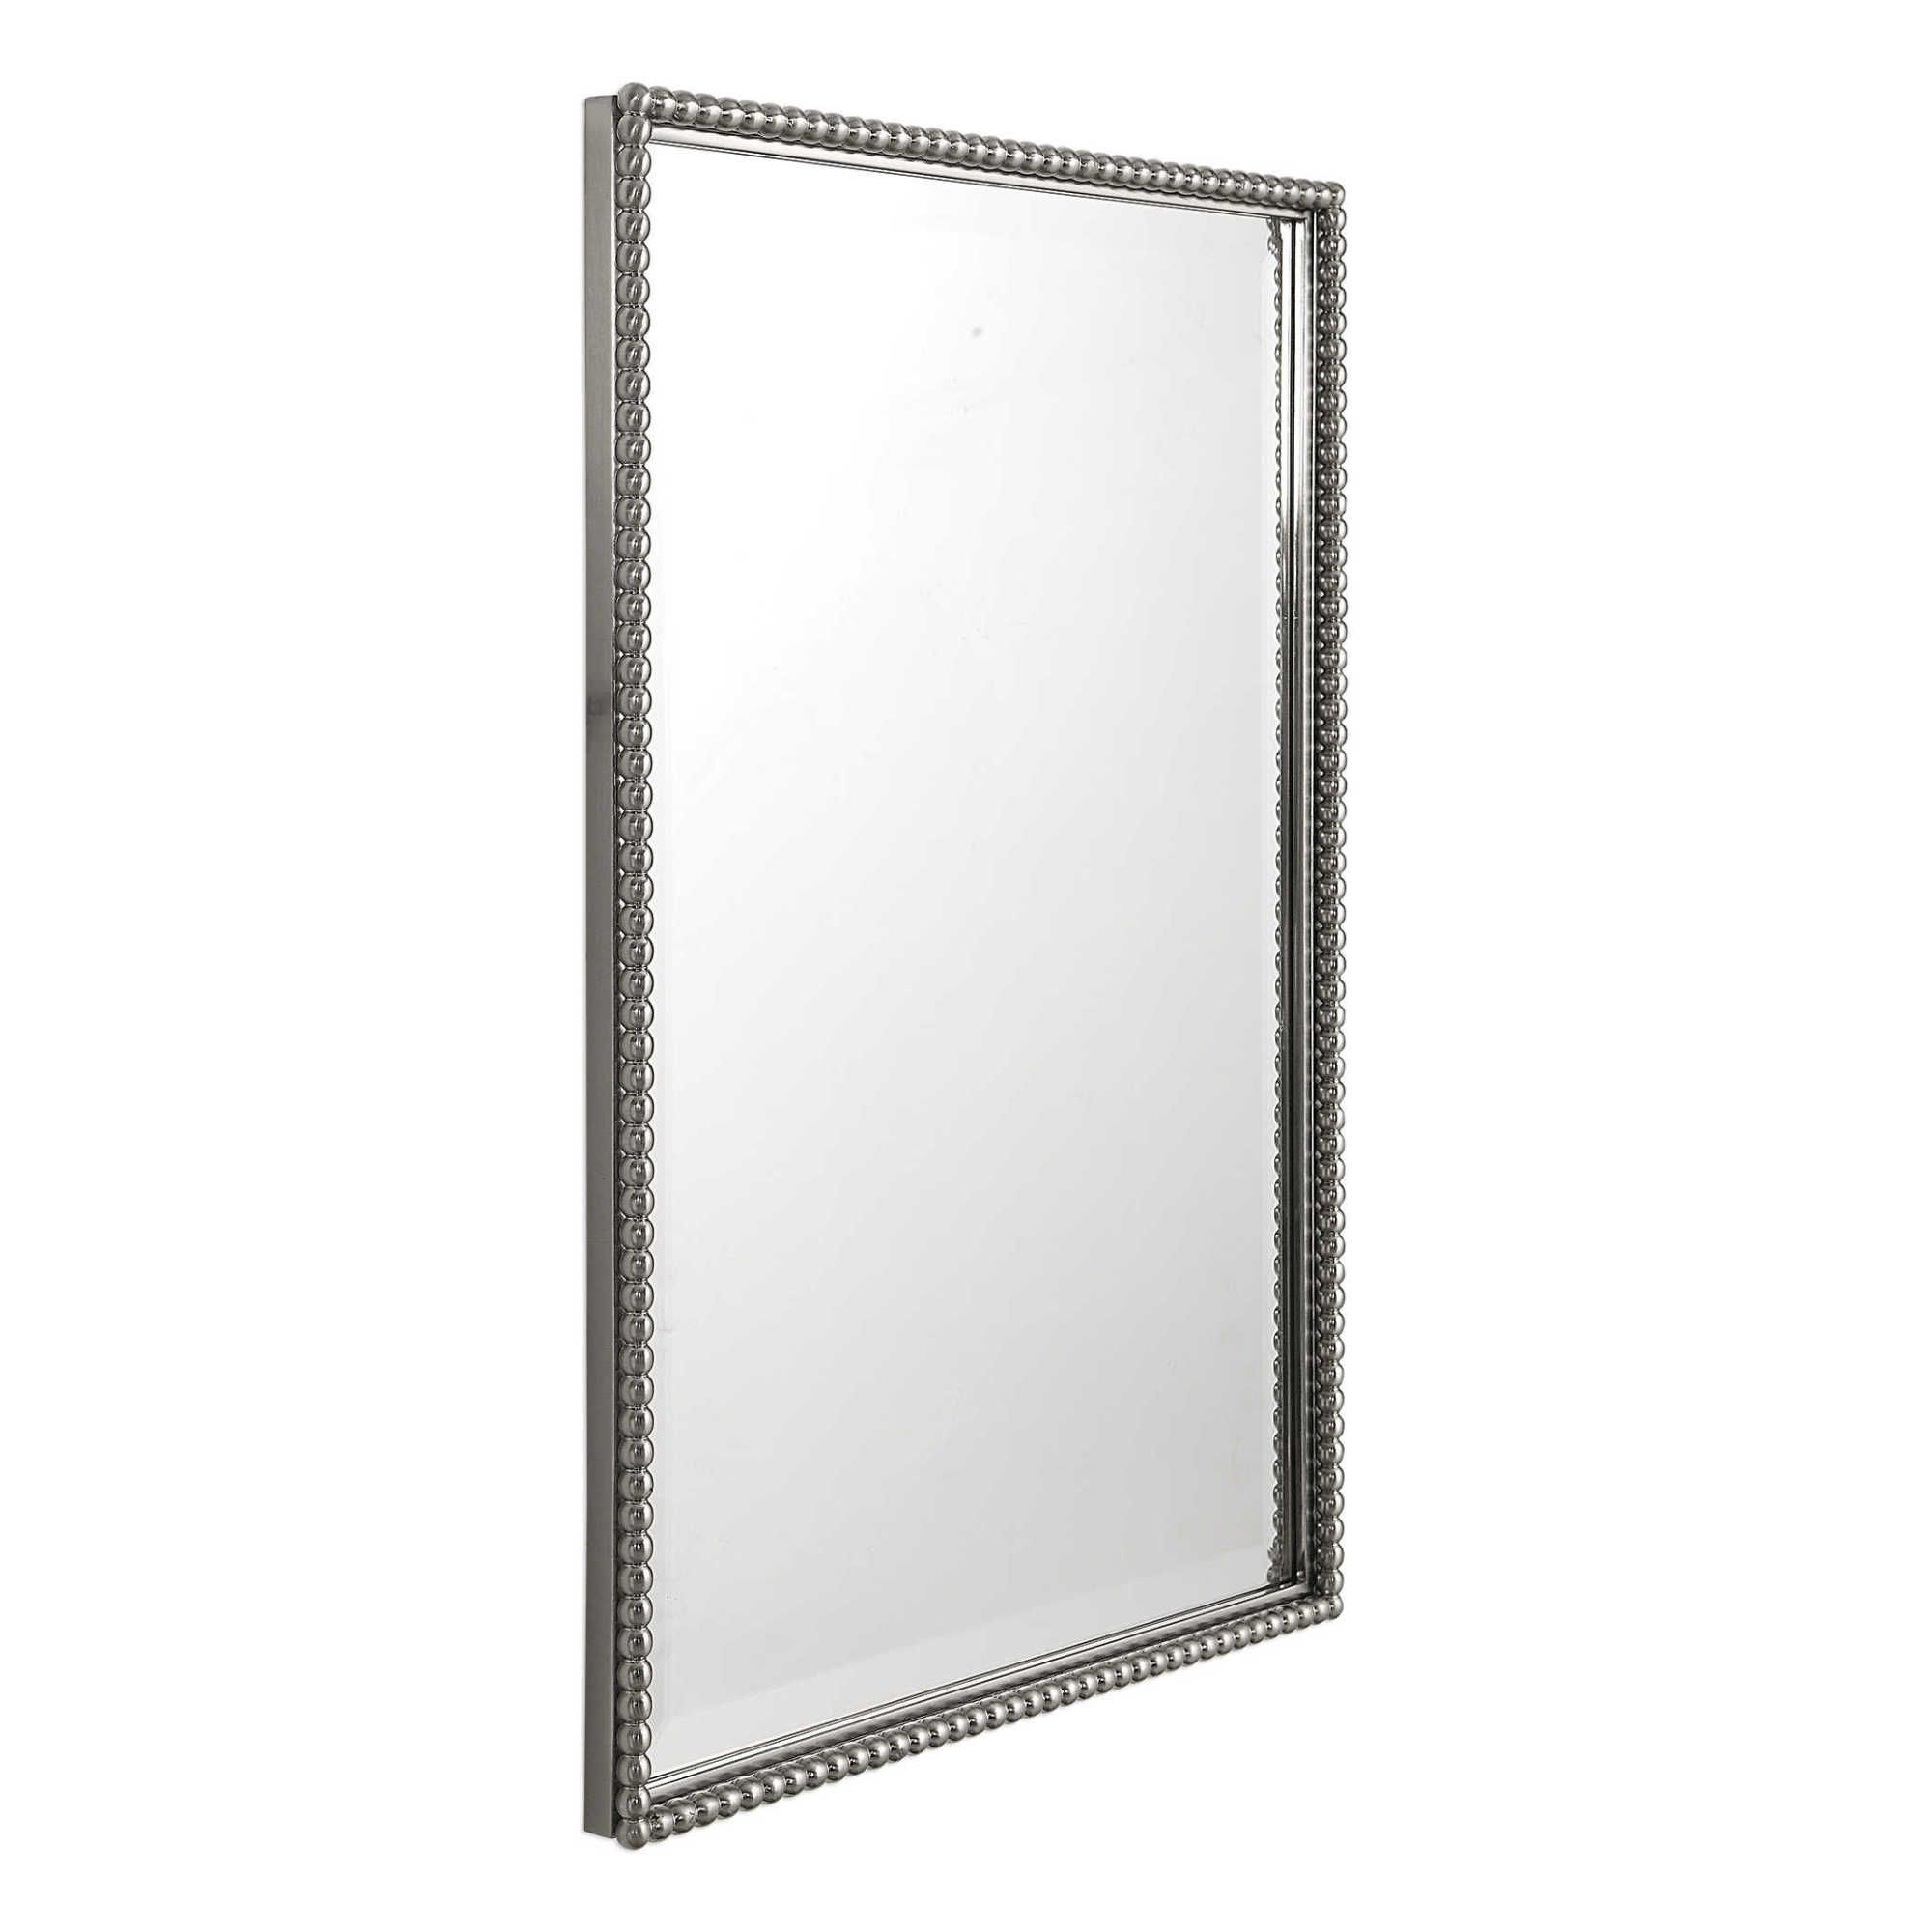 Uttermost 01113 Nickel Sherise Rectangle Rectangular Mirror | Ebay Throughout Brushed Nickel Rectangular Wall Mirrors (View 9 of 15)